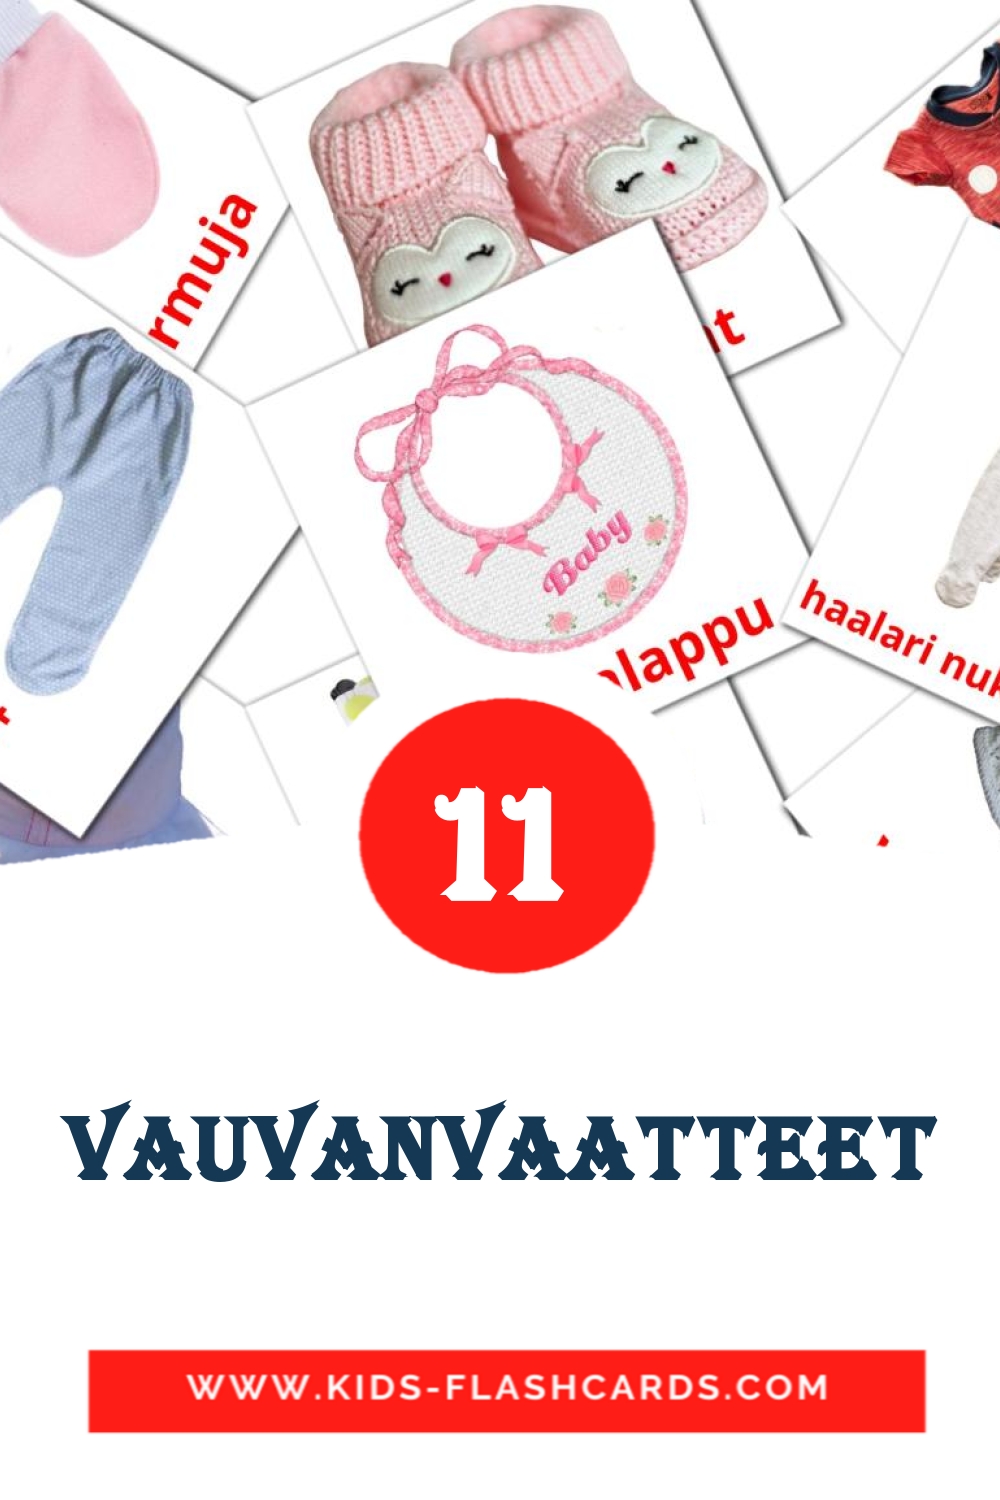 11 cartes illustrées de vauvanvaatteet pour la maternelle en finlandais